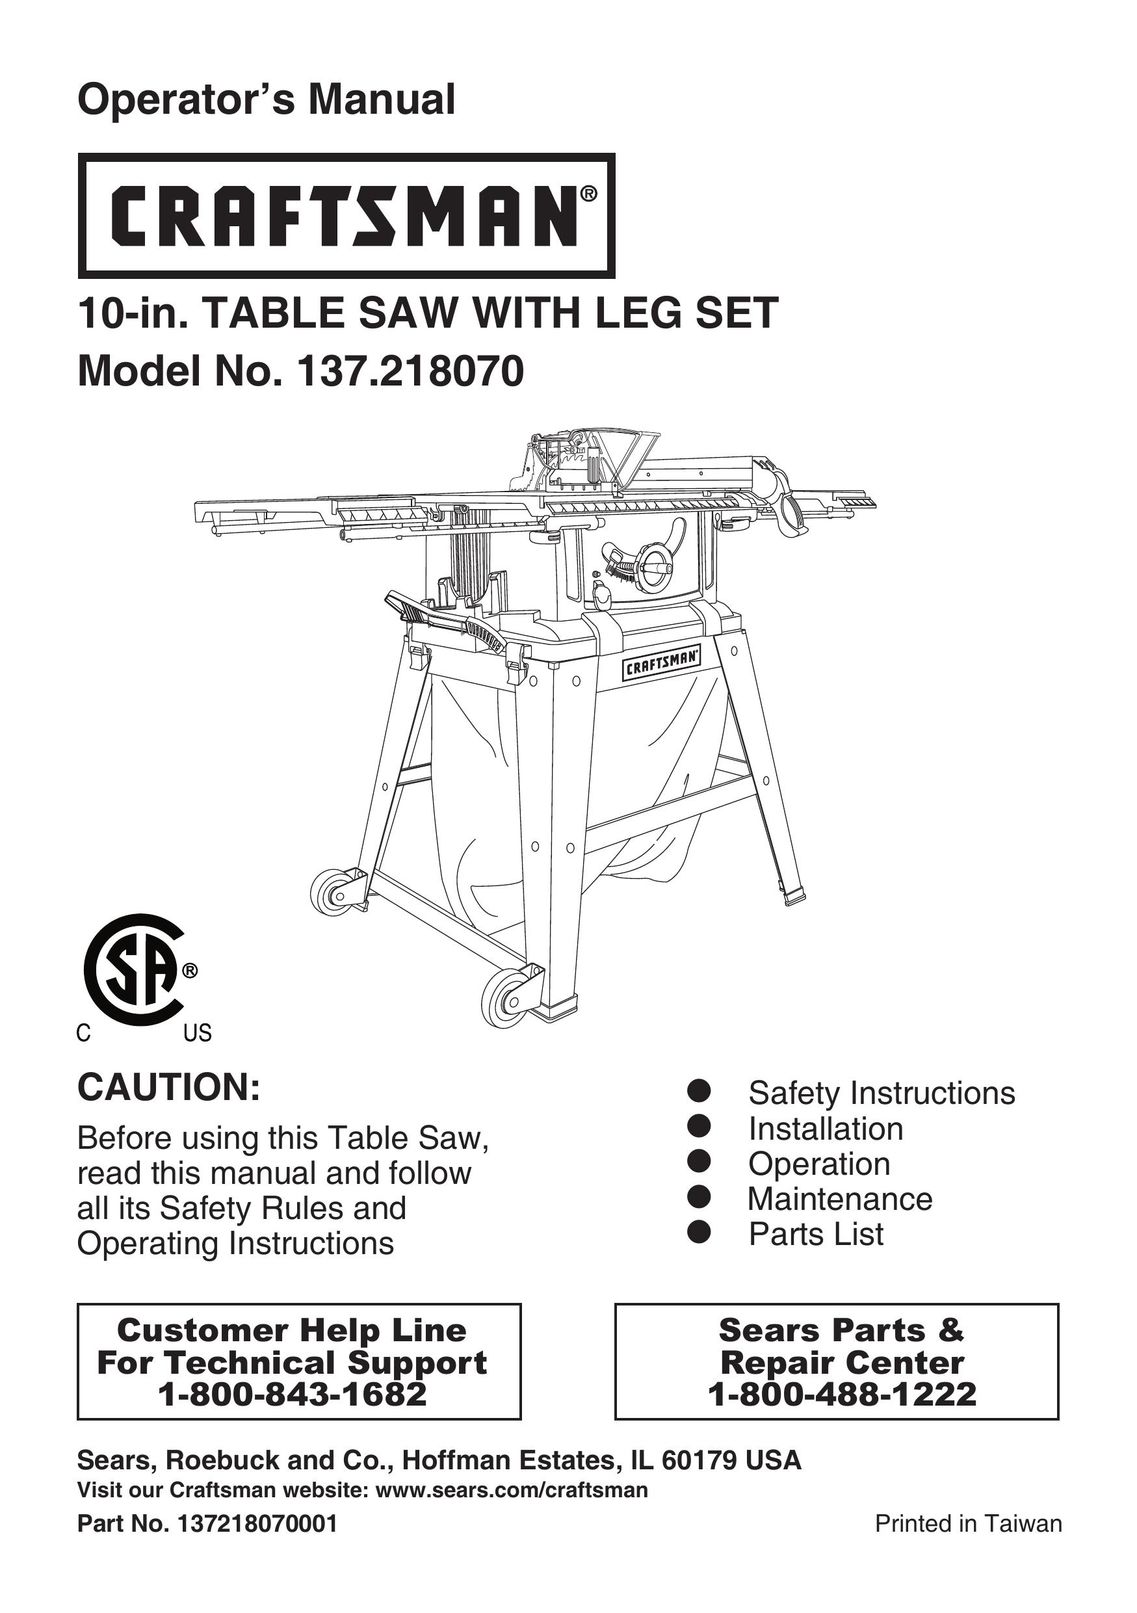 Craftsman 137.21807 Saw User Manual